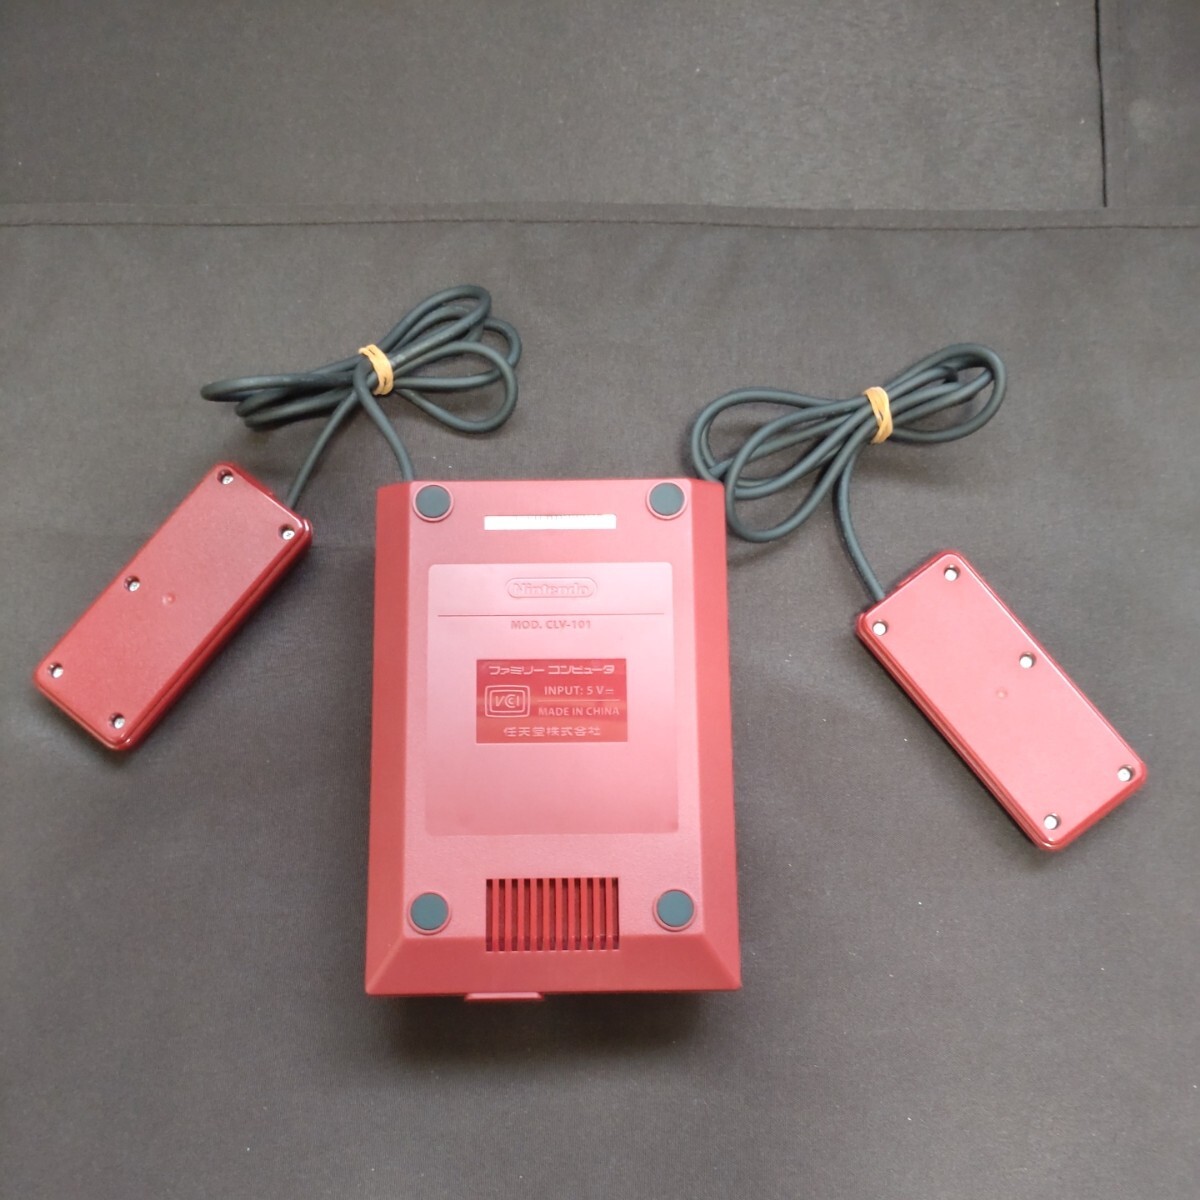 【動作品】ニンテンドー クラシック ミニ ファミリー コンピューター USED品 初期化済 30タイトル内蔵 Nintendoの画像3